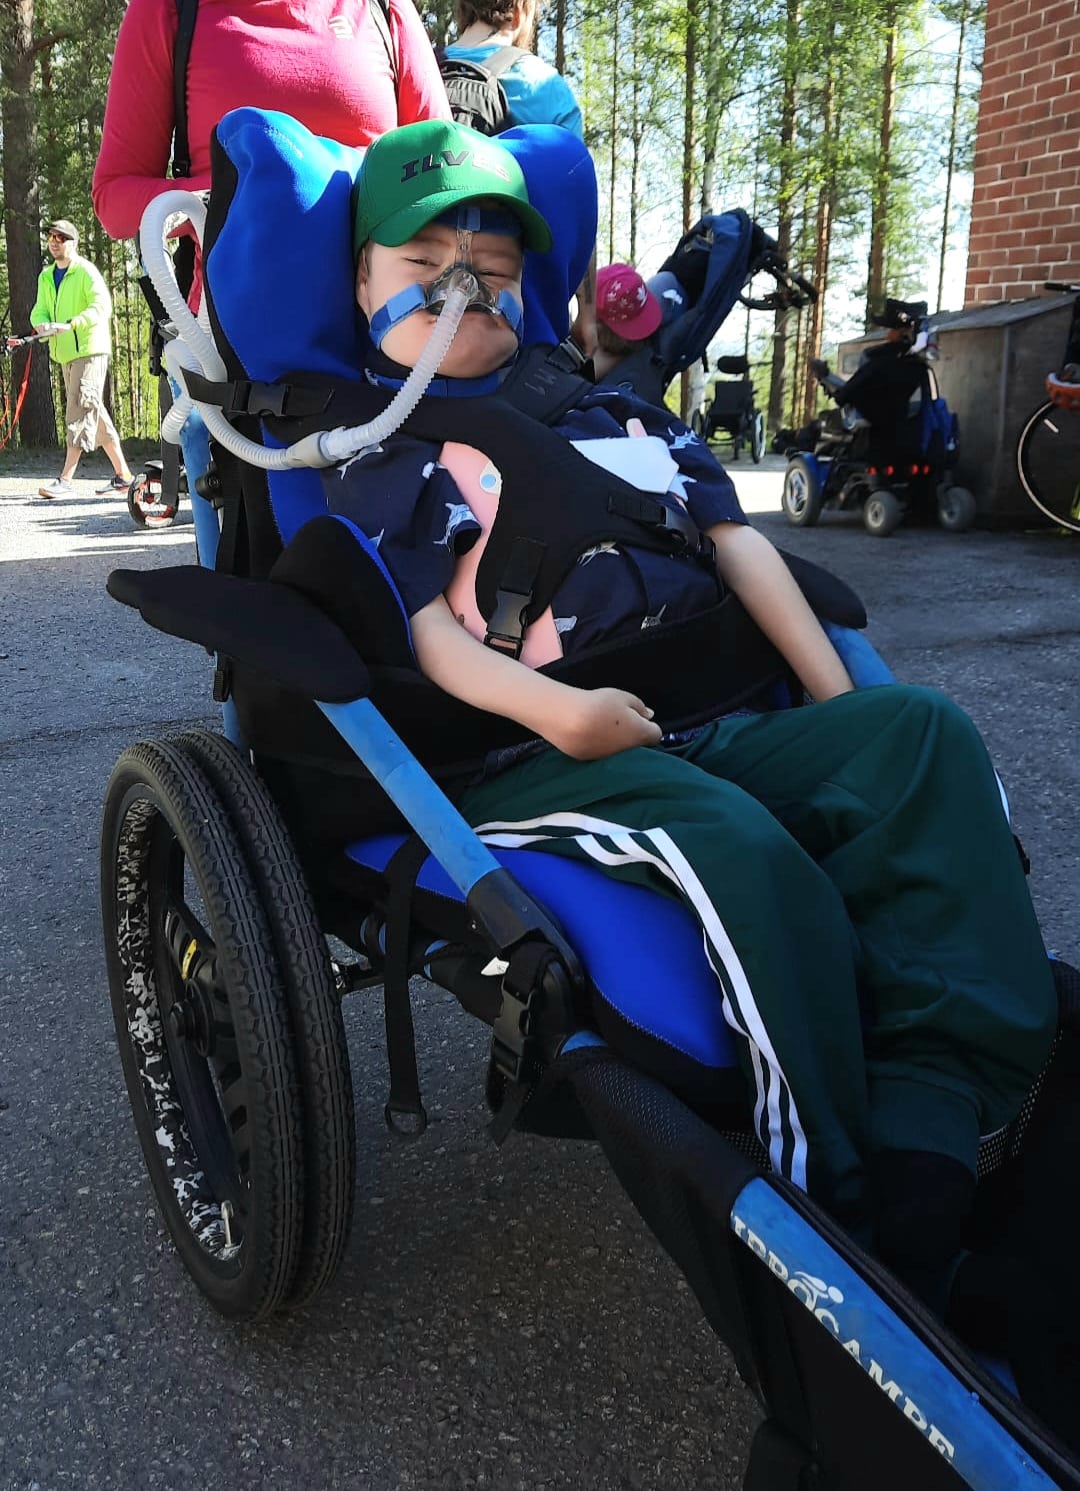 Poika istuu sinisessä maastopyörätuolissa. Pyörätuoliin on aseteltu sininen asentotyyny. Pojalla on hengitystuki.